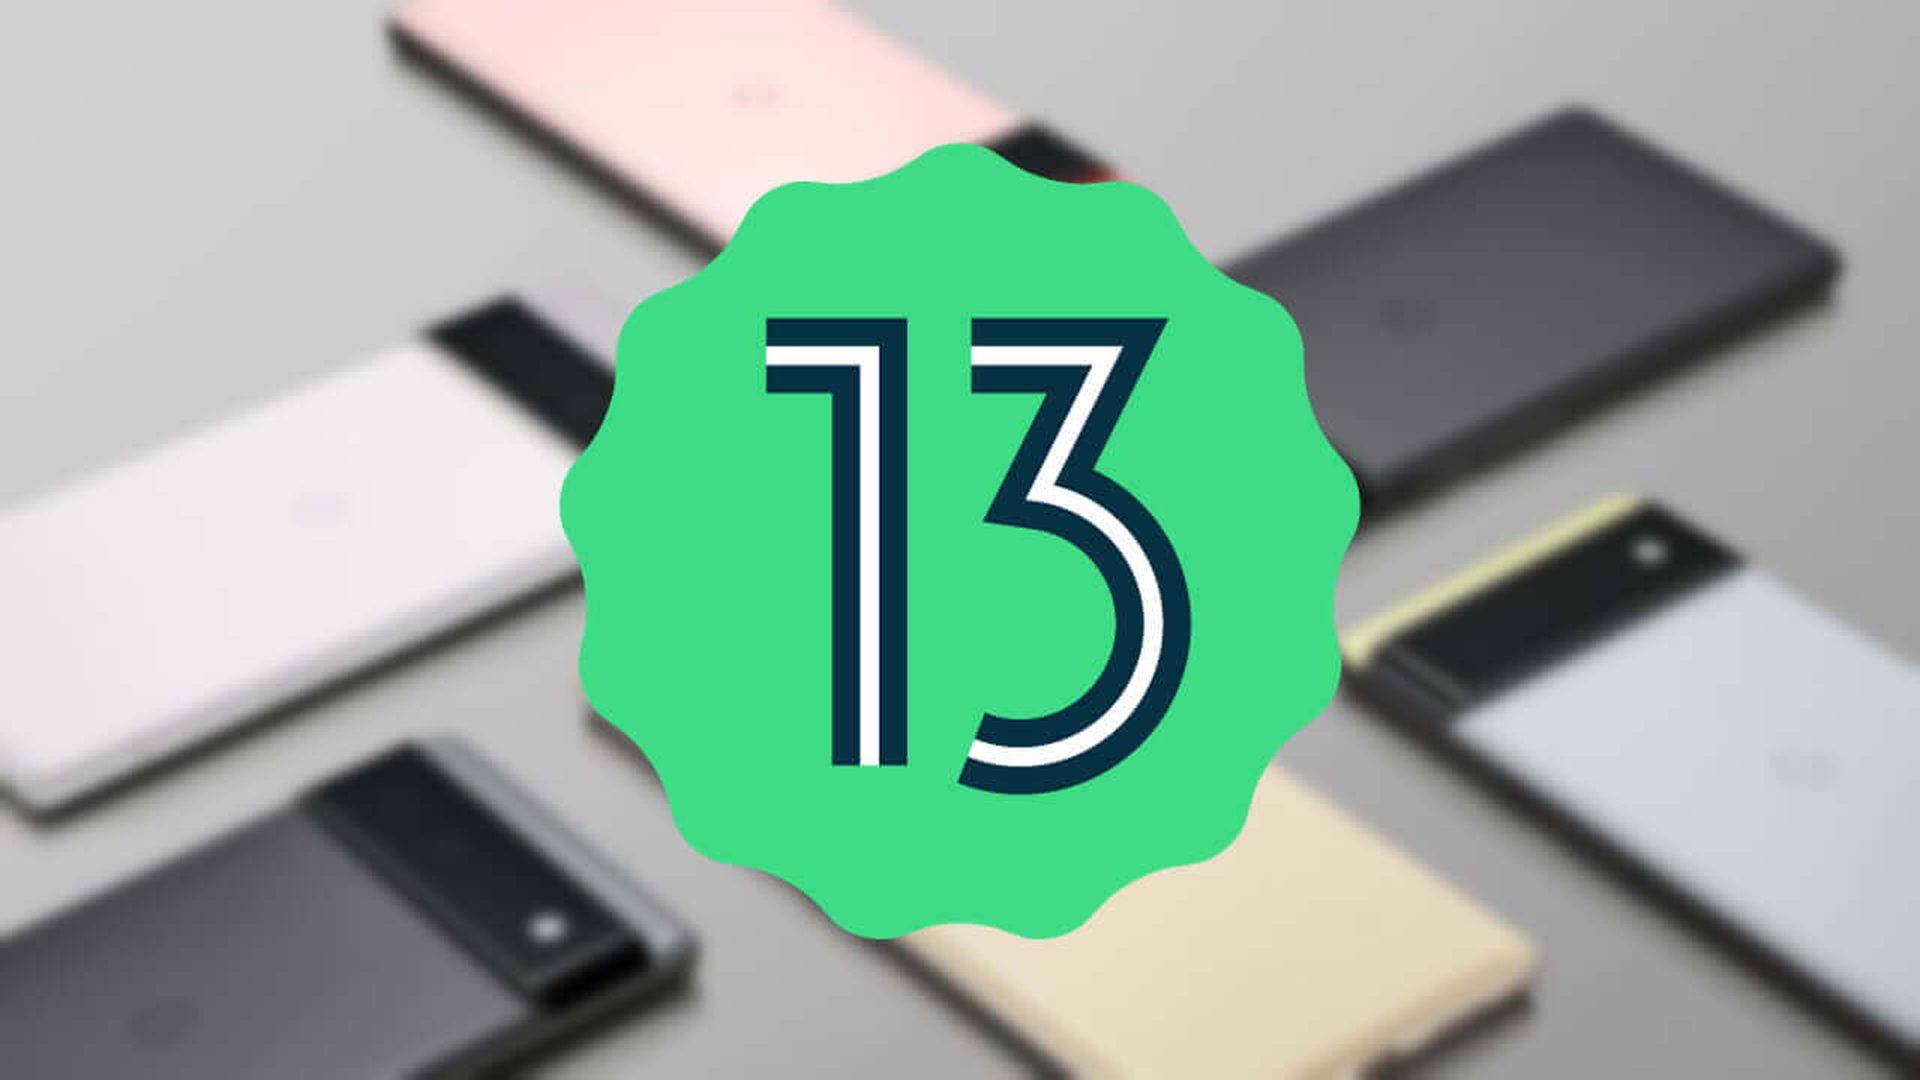 Android 13 Beta ist da: Neue Funktionen, unterstützte Geräte und mehr